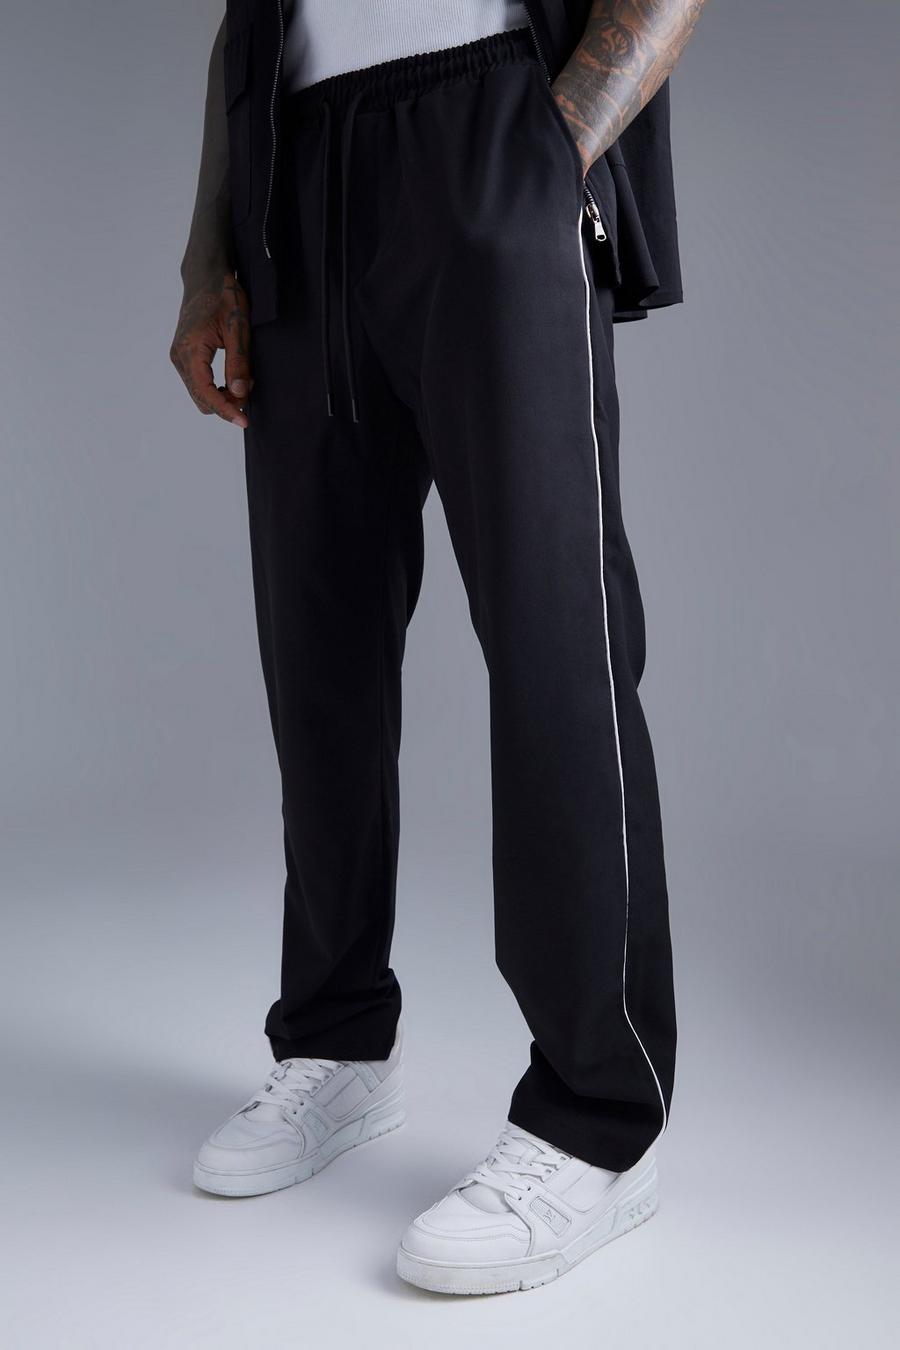 Pantaloni tuta dritti con cordoncino, Black negro image number 1